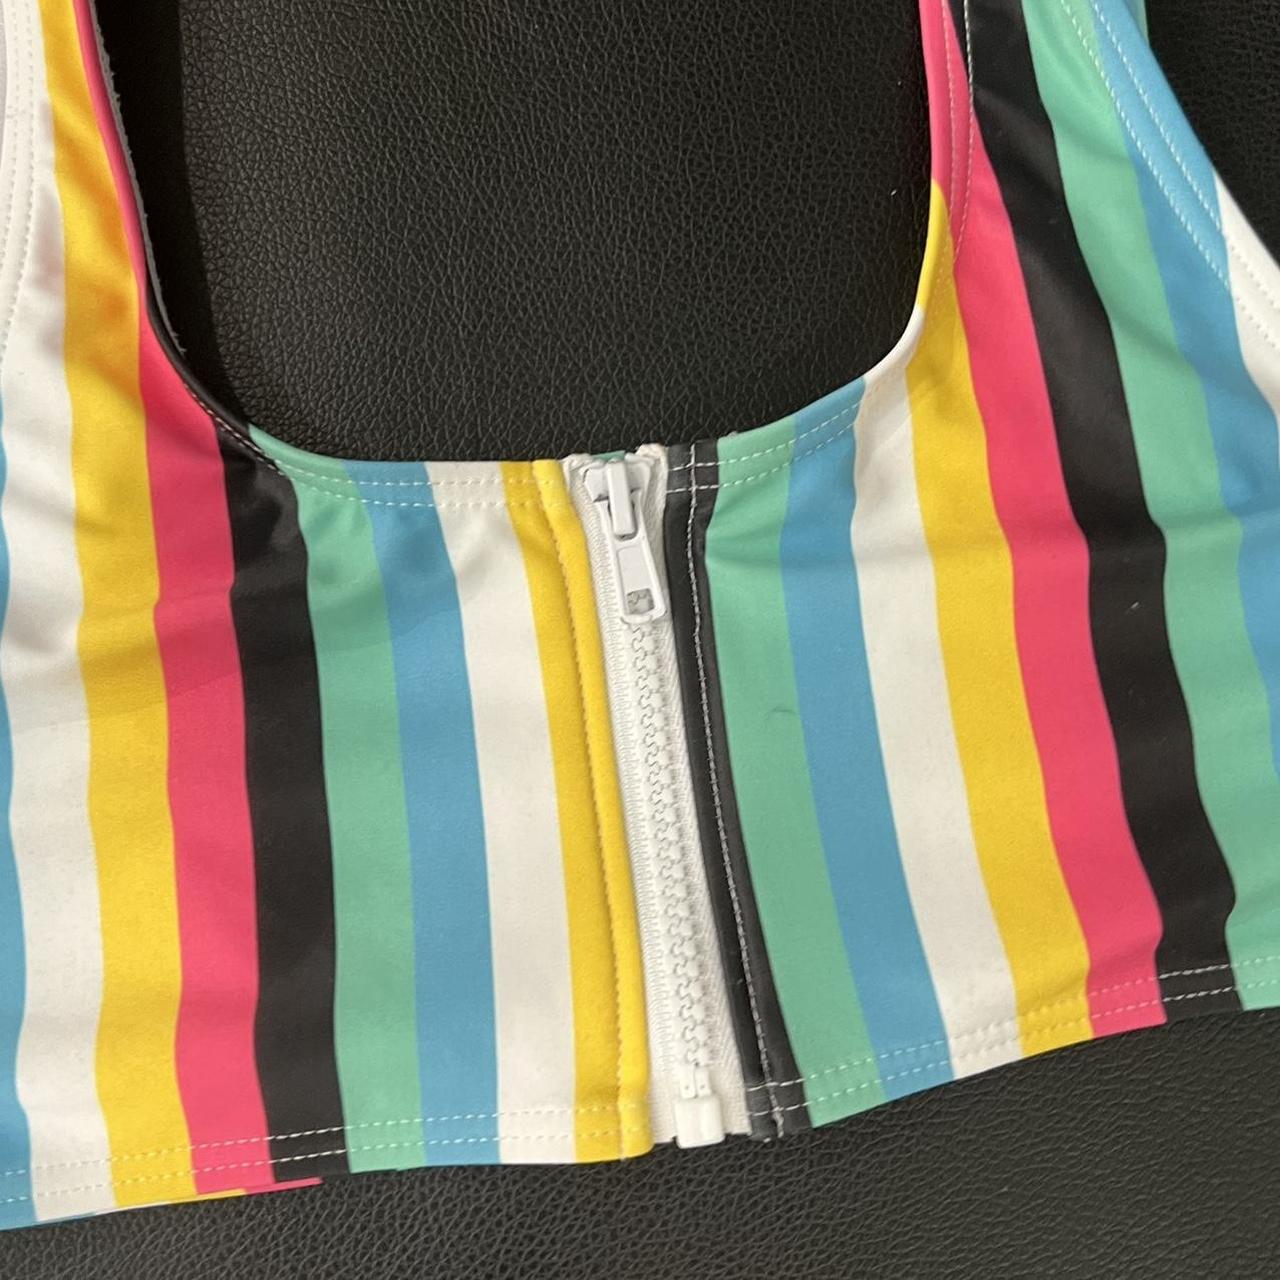 Product Image 3 - Bikini top with zipper 
The